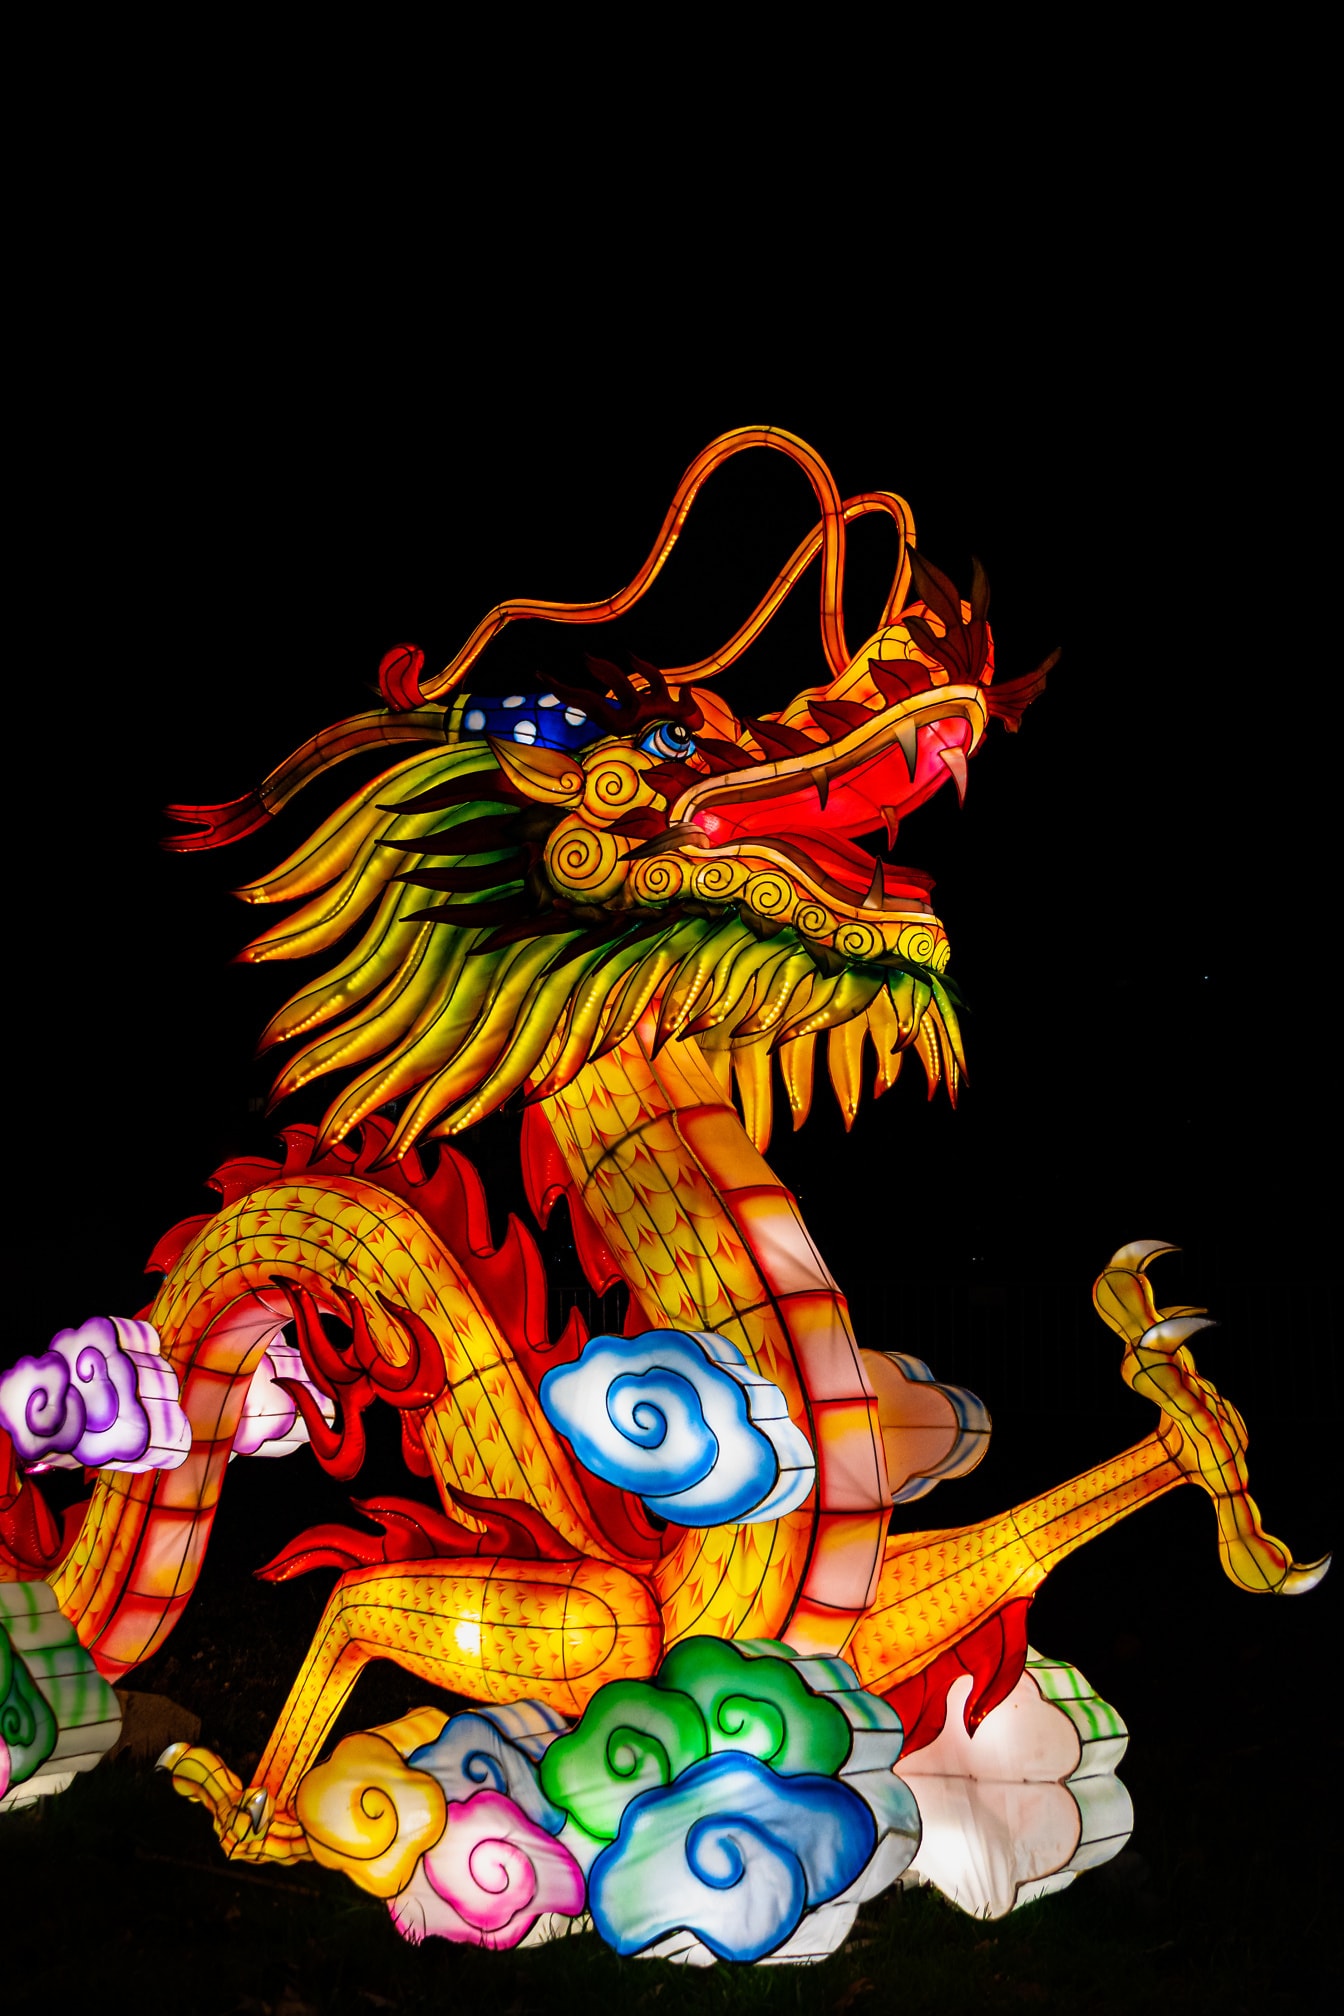 Китайски дракон, цветна скулптура на китайски фестивал на фенерите, известен също като фестивал Shangyuan